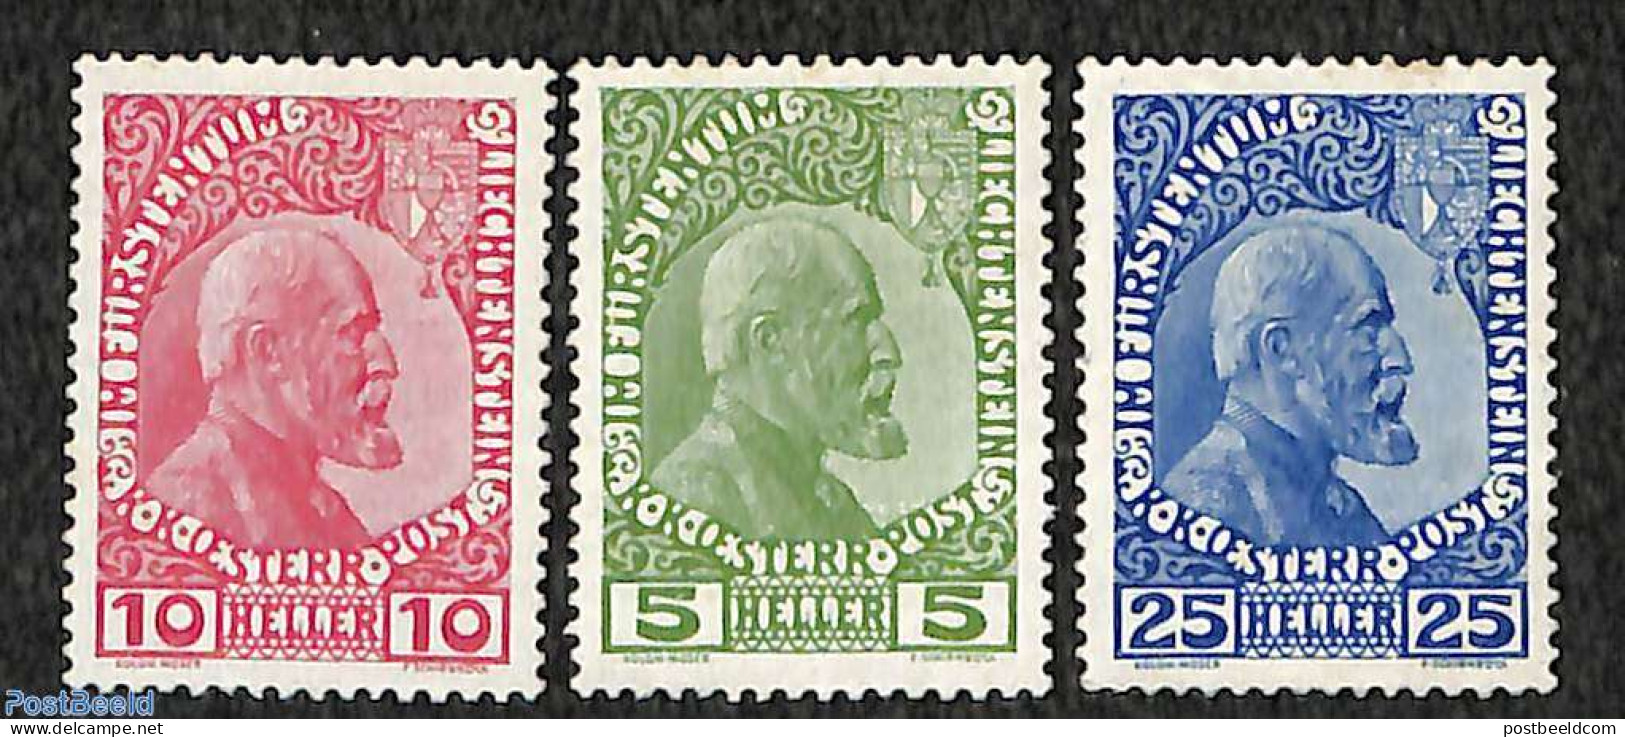 Liechtenstein 1912 Johann II 3v, Coated Paper, Unused (hinged), History - Kings & Queens (Royalty) - Unused Stamps